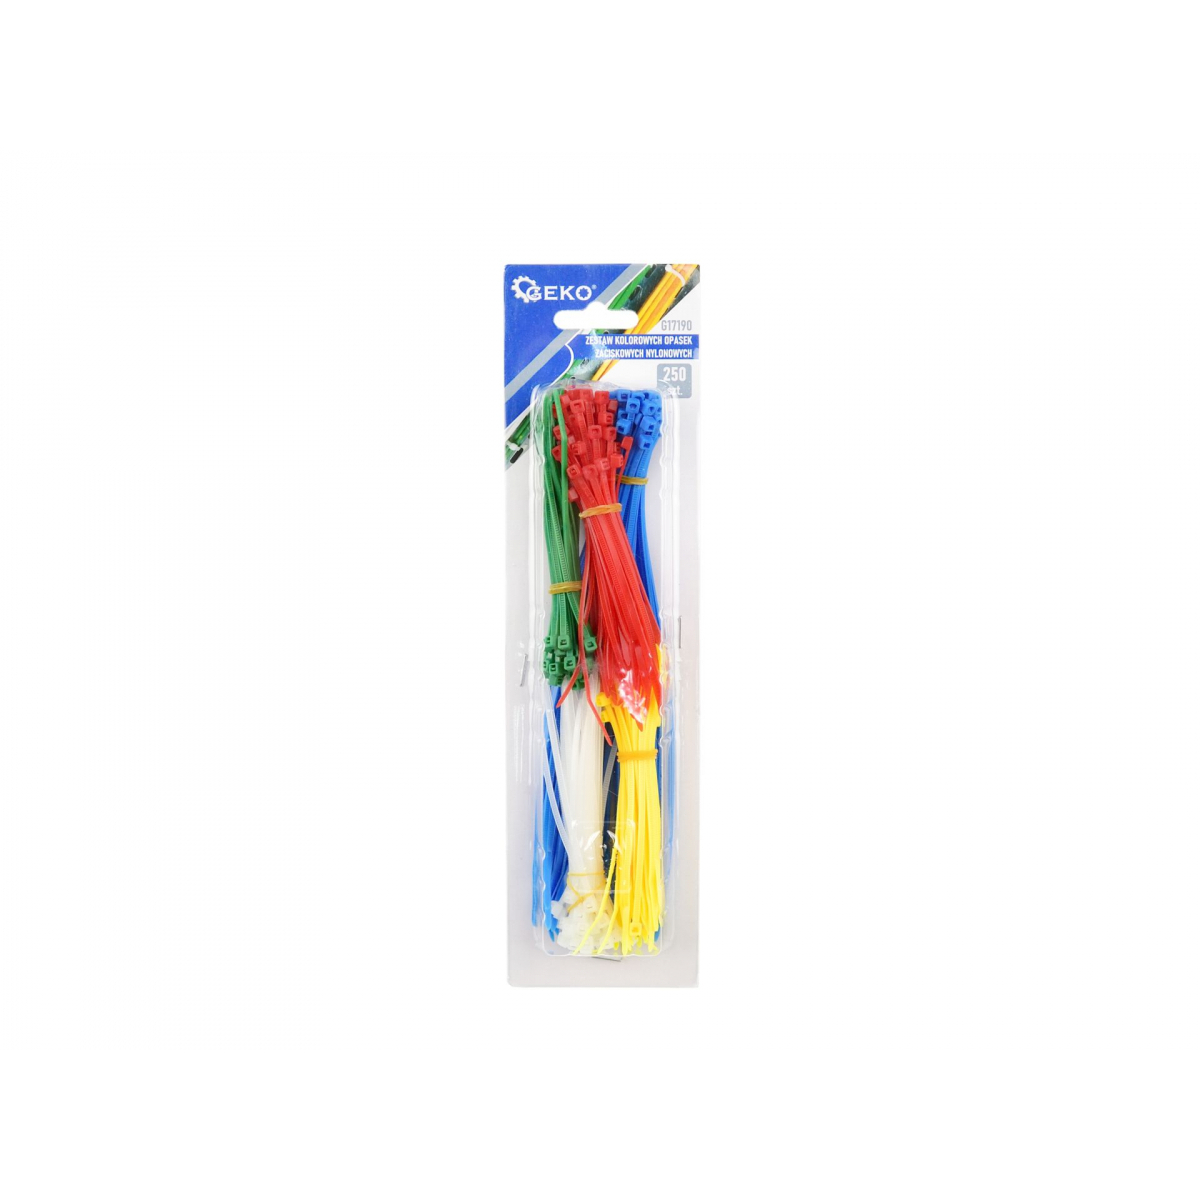 GEKO Nylonové stahovací pásky barevné - 250ks